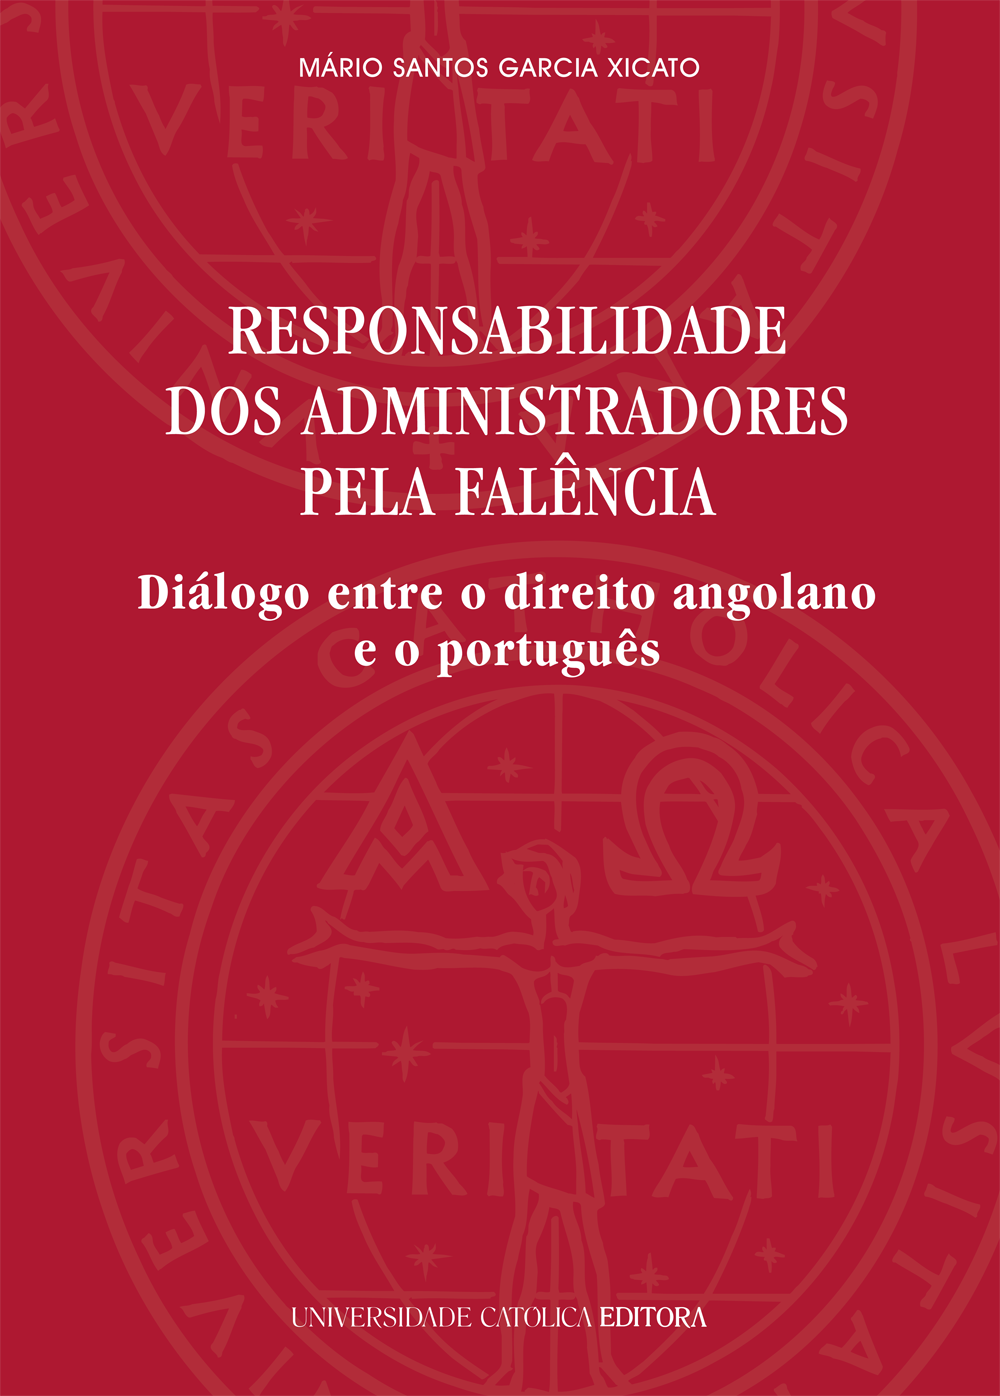 RESPONSABILIDADE DOS ADMINISTRADORES PELA FALÊNCIA - Diálogo entre o direito angolano e o português   